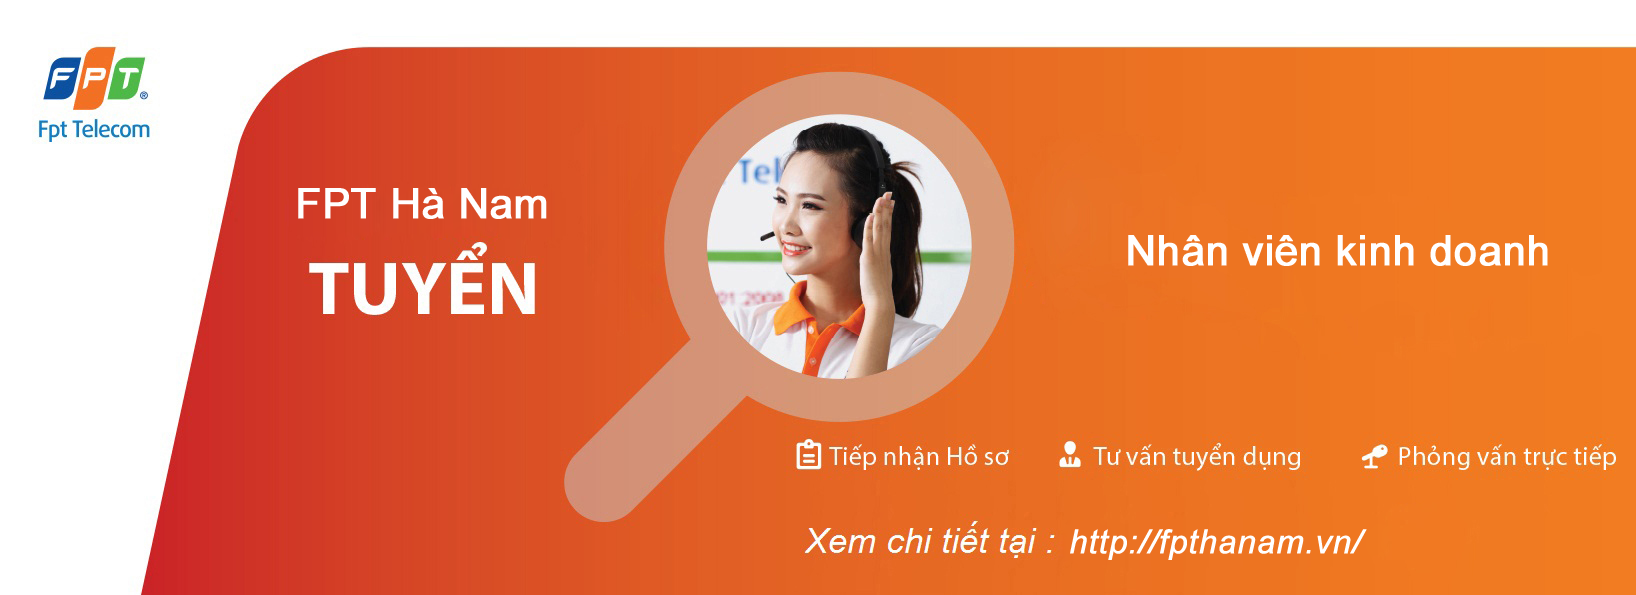 FPT Hà Nam tuyển dụng Nhân viên kinh doanh - FPT Telecom